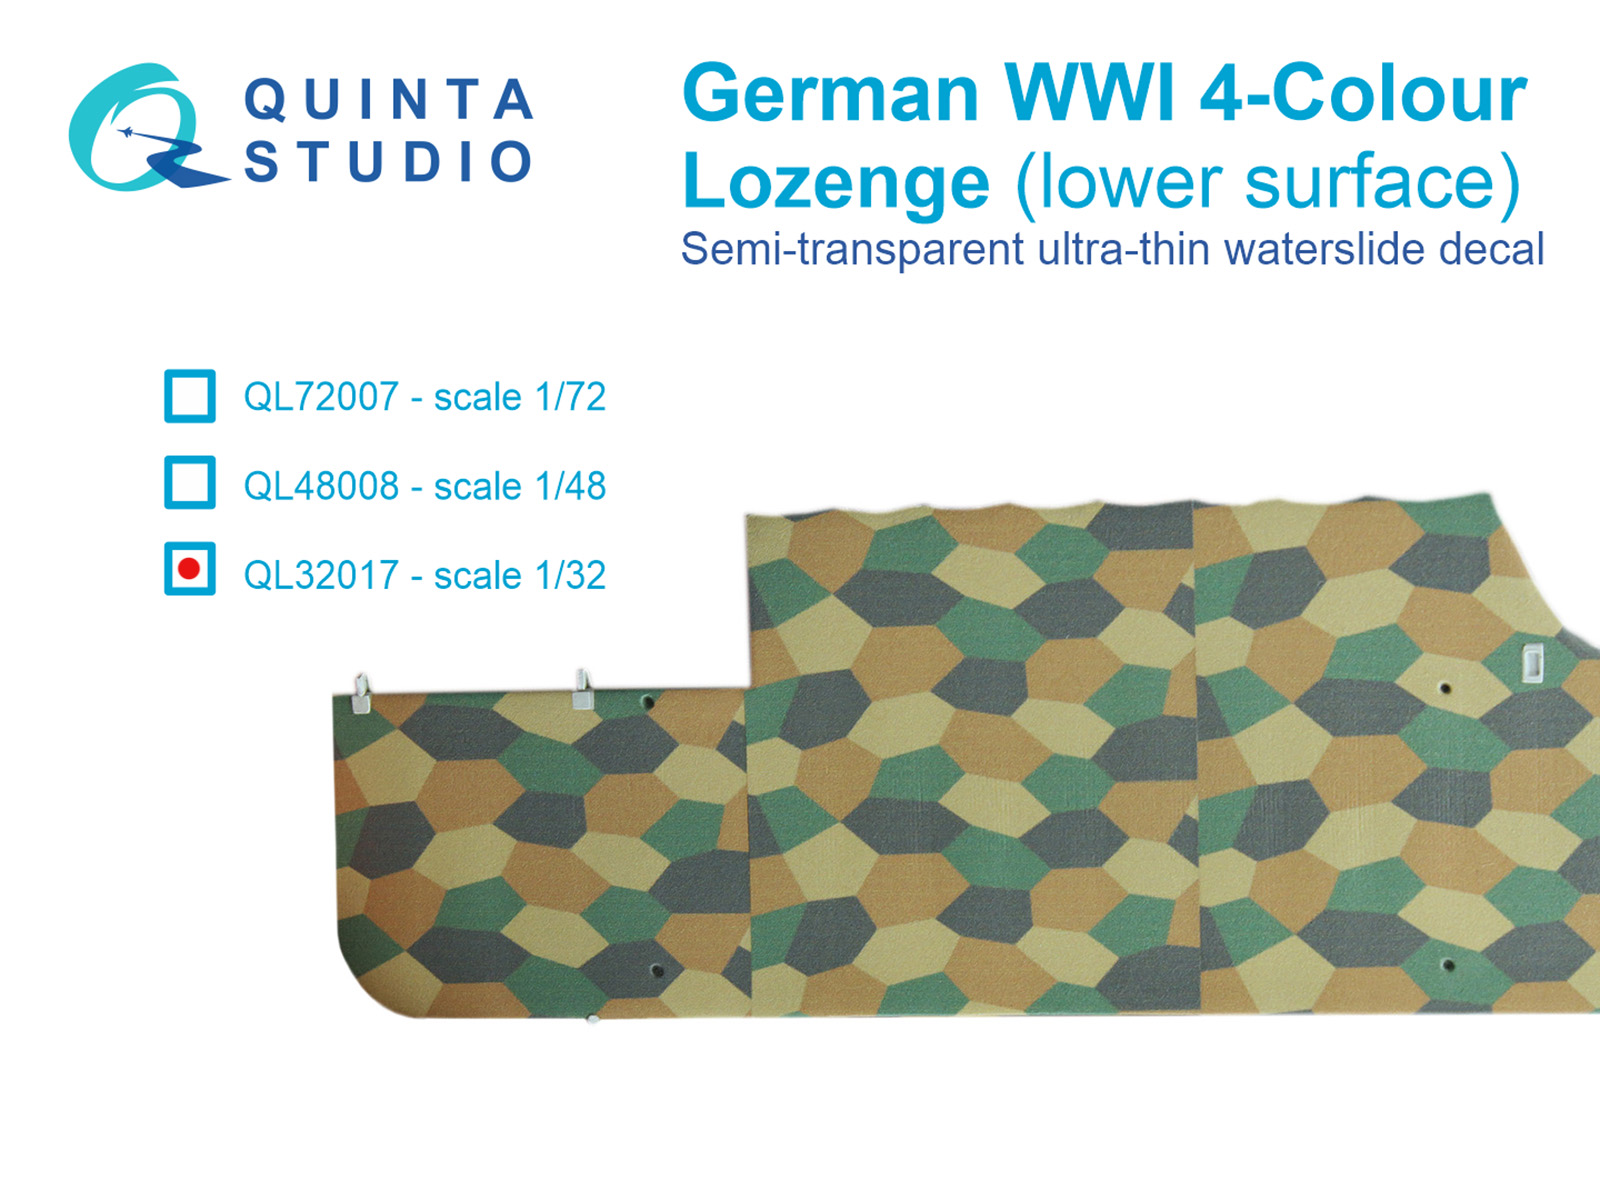 QL32017  декали  Германский WWI 4-цветный Лозенг (нижние поверхности)  (1:32)